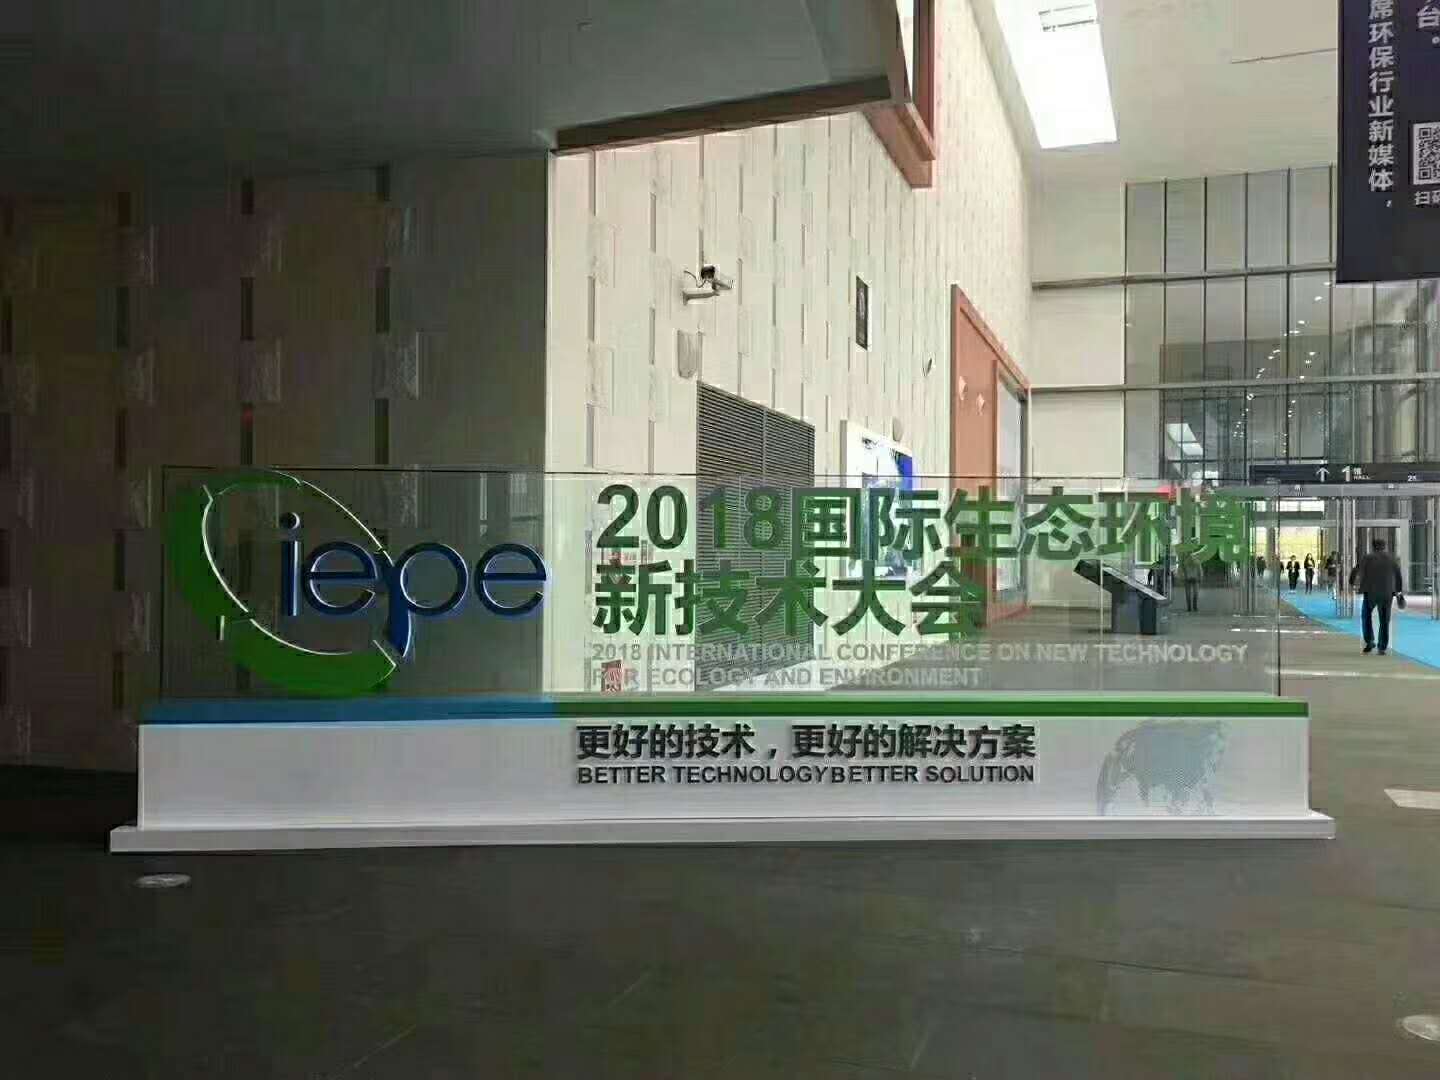 蘇州頂裕風機亮相國際生態環境新技術大會